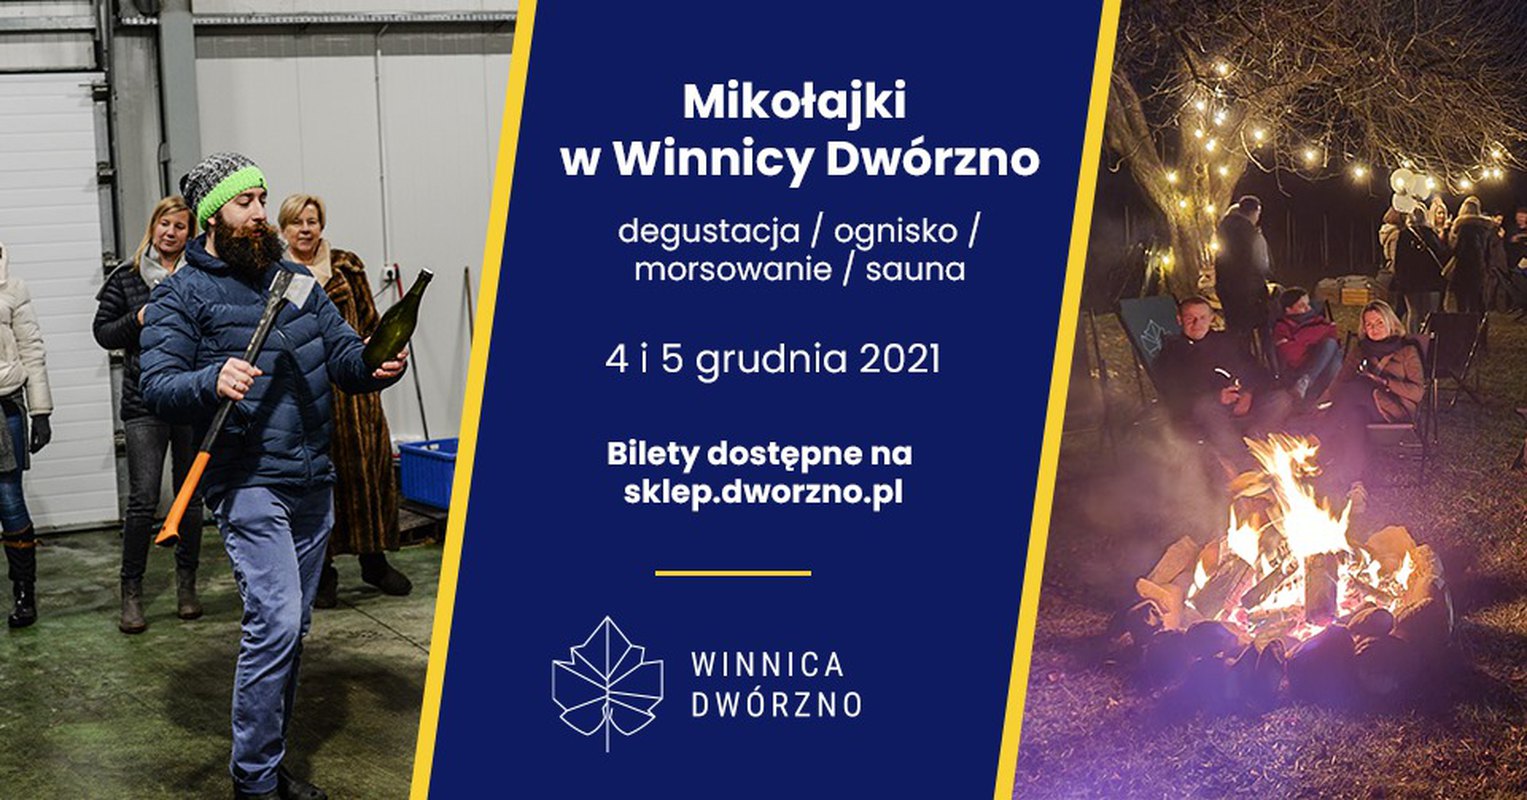 Mikołajki w Winnicy Dwórzno 4-5.12 - degustacja/ognisko/morsowanie/sauna